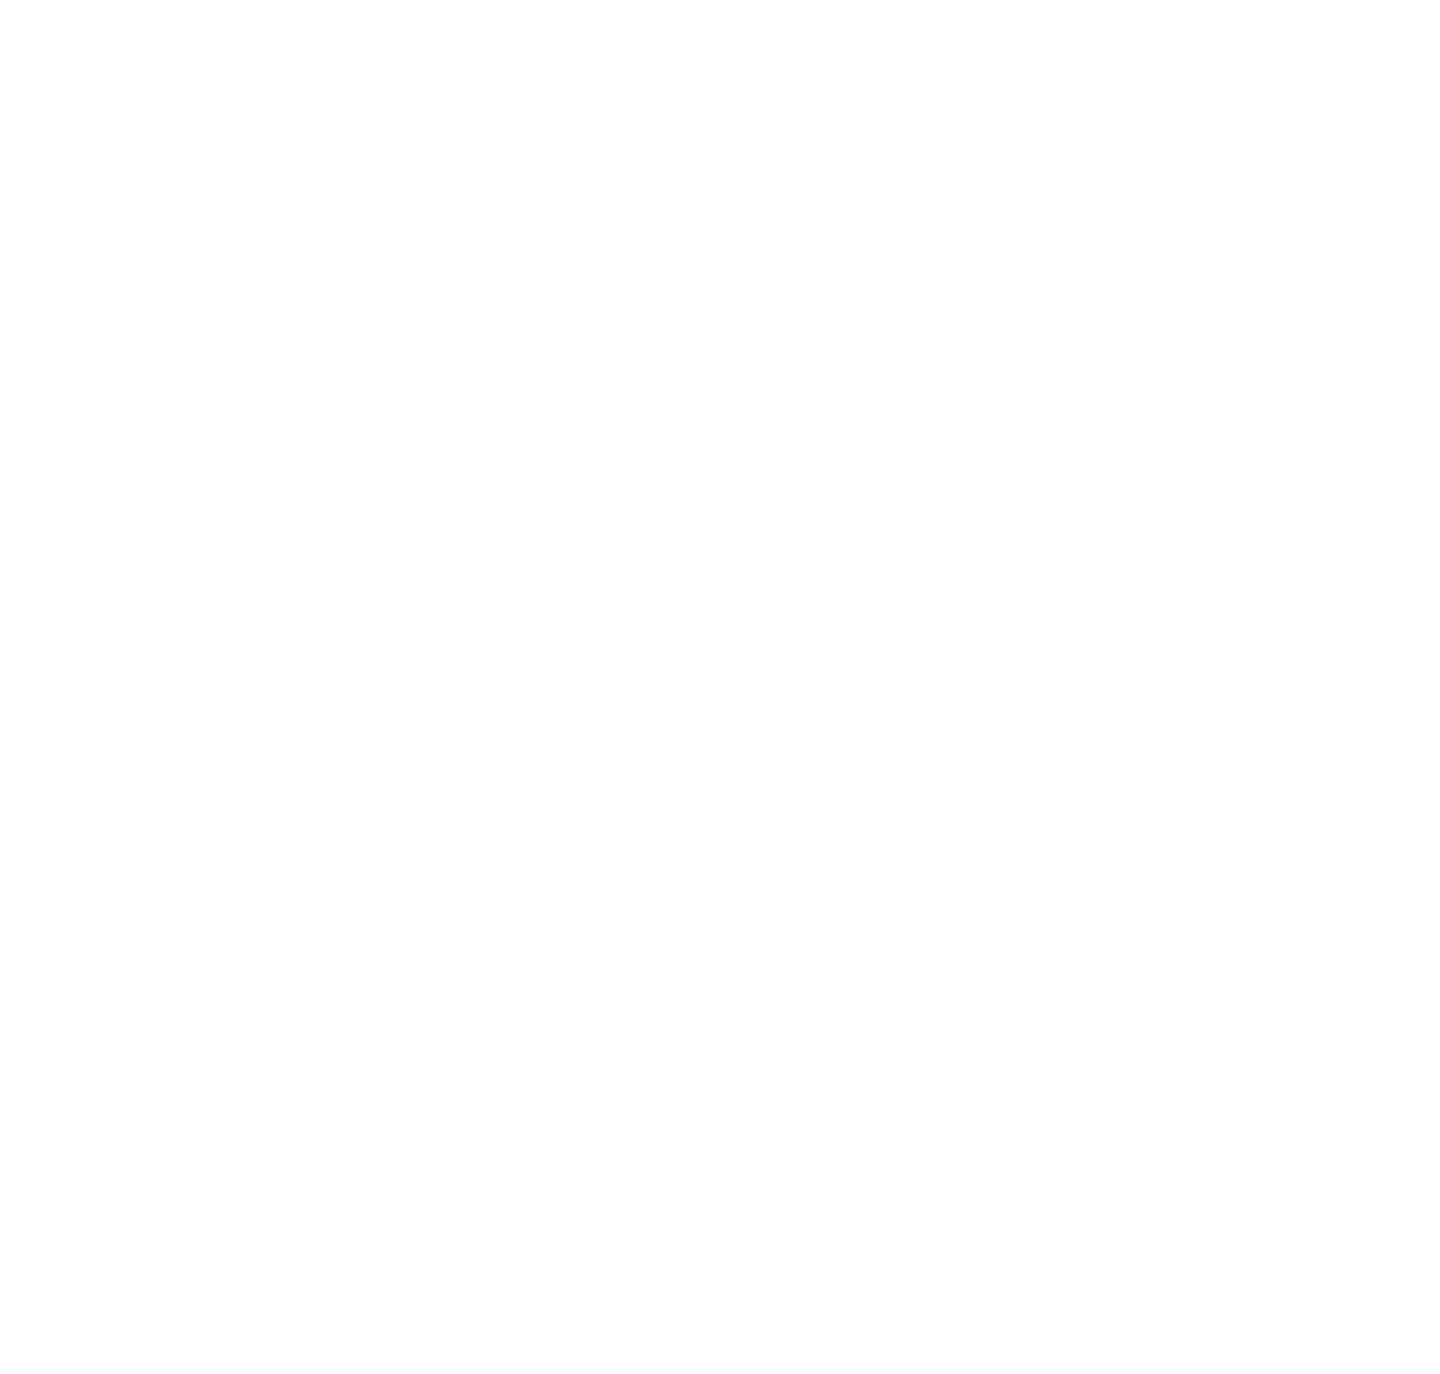 image pattern